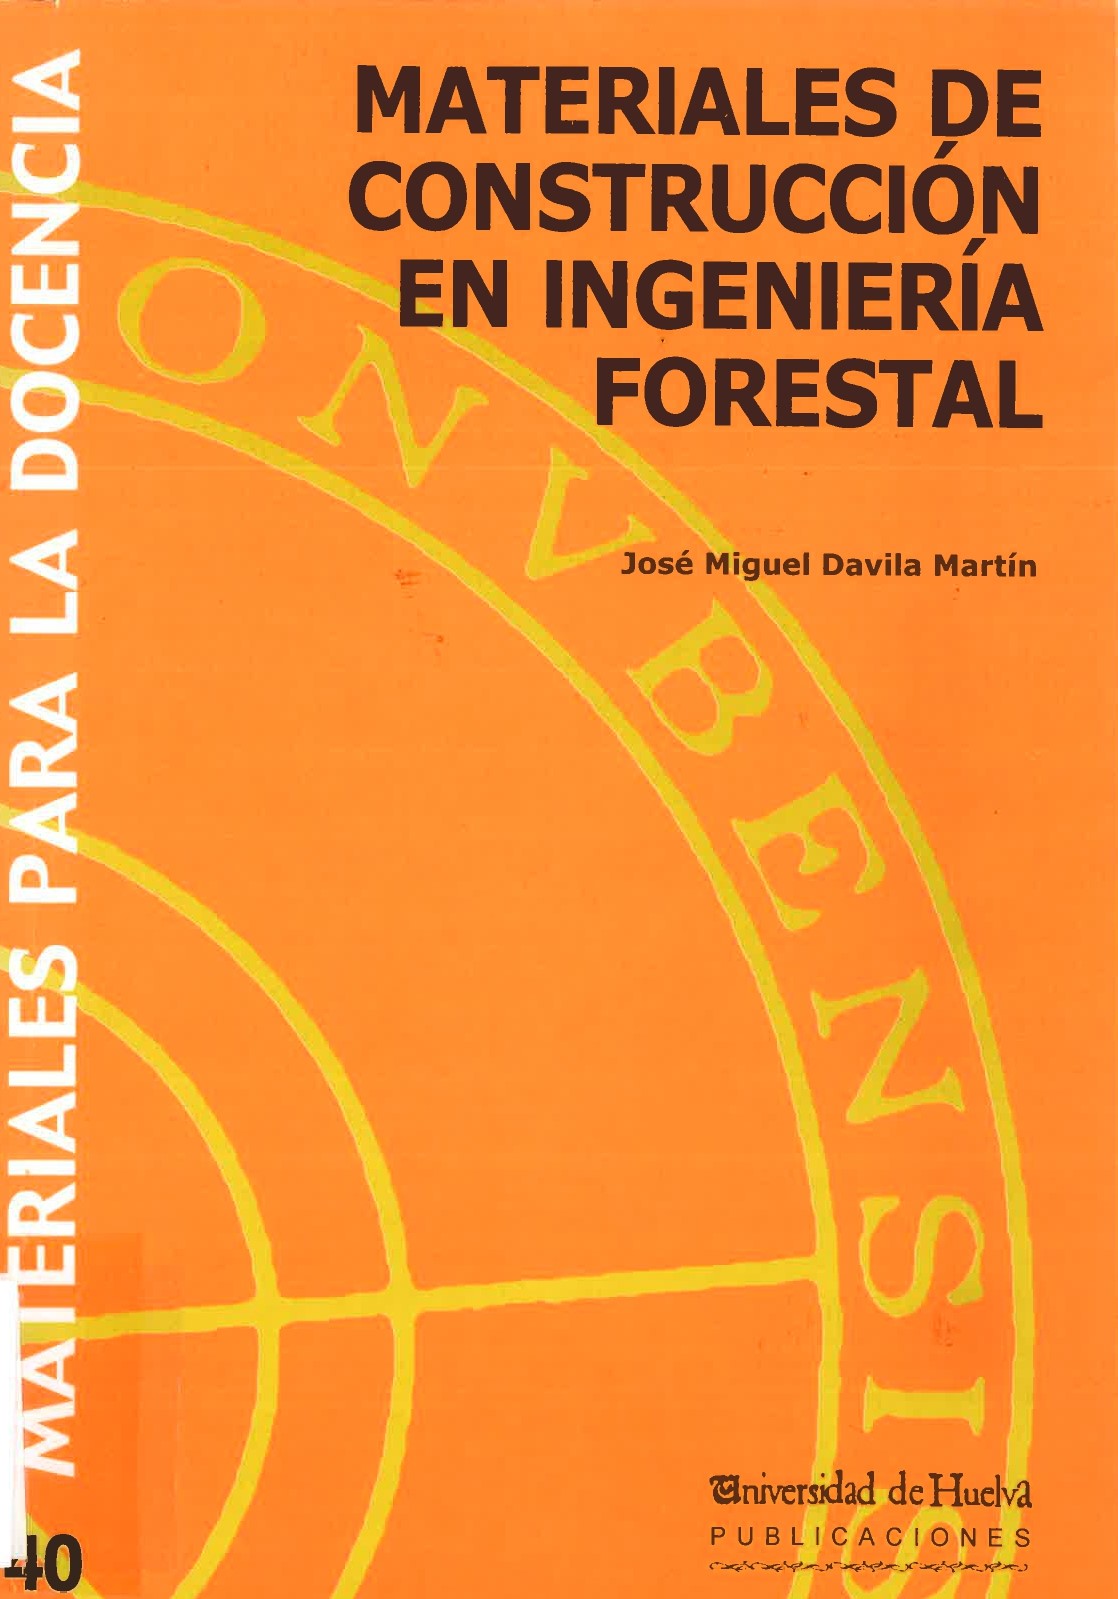 Imagen de portada del libro Materiales de Construcción en Ingeniería Forestal